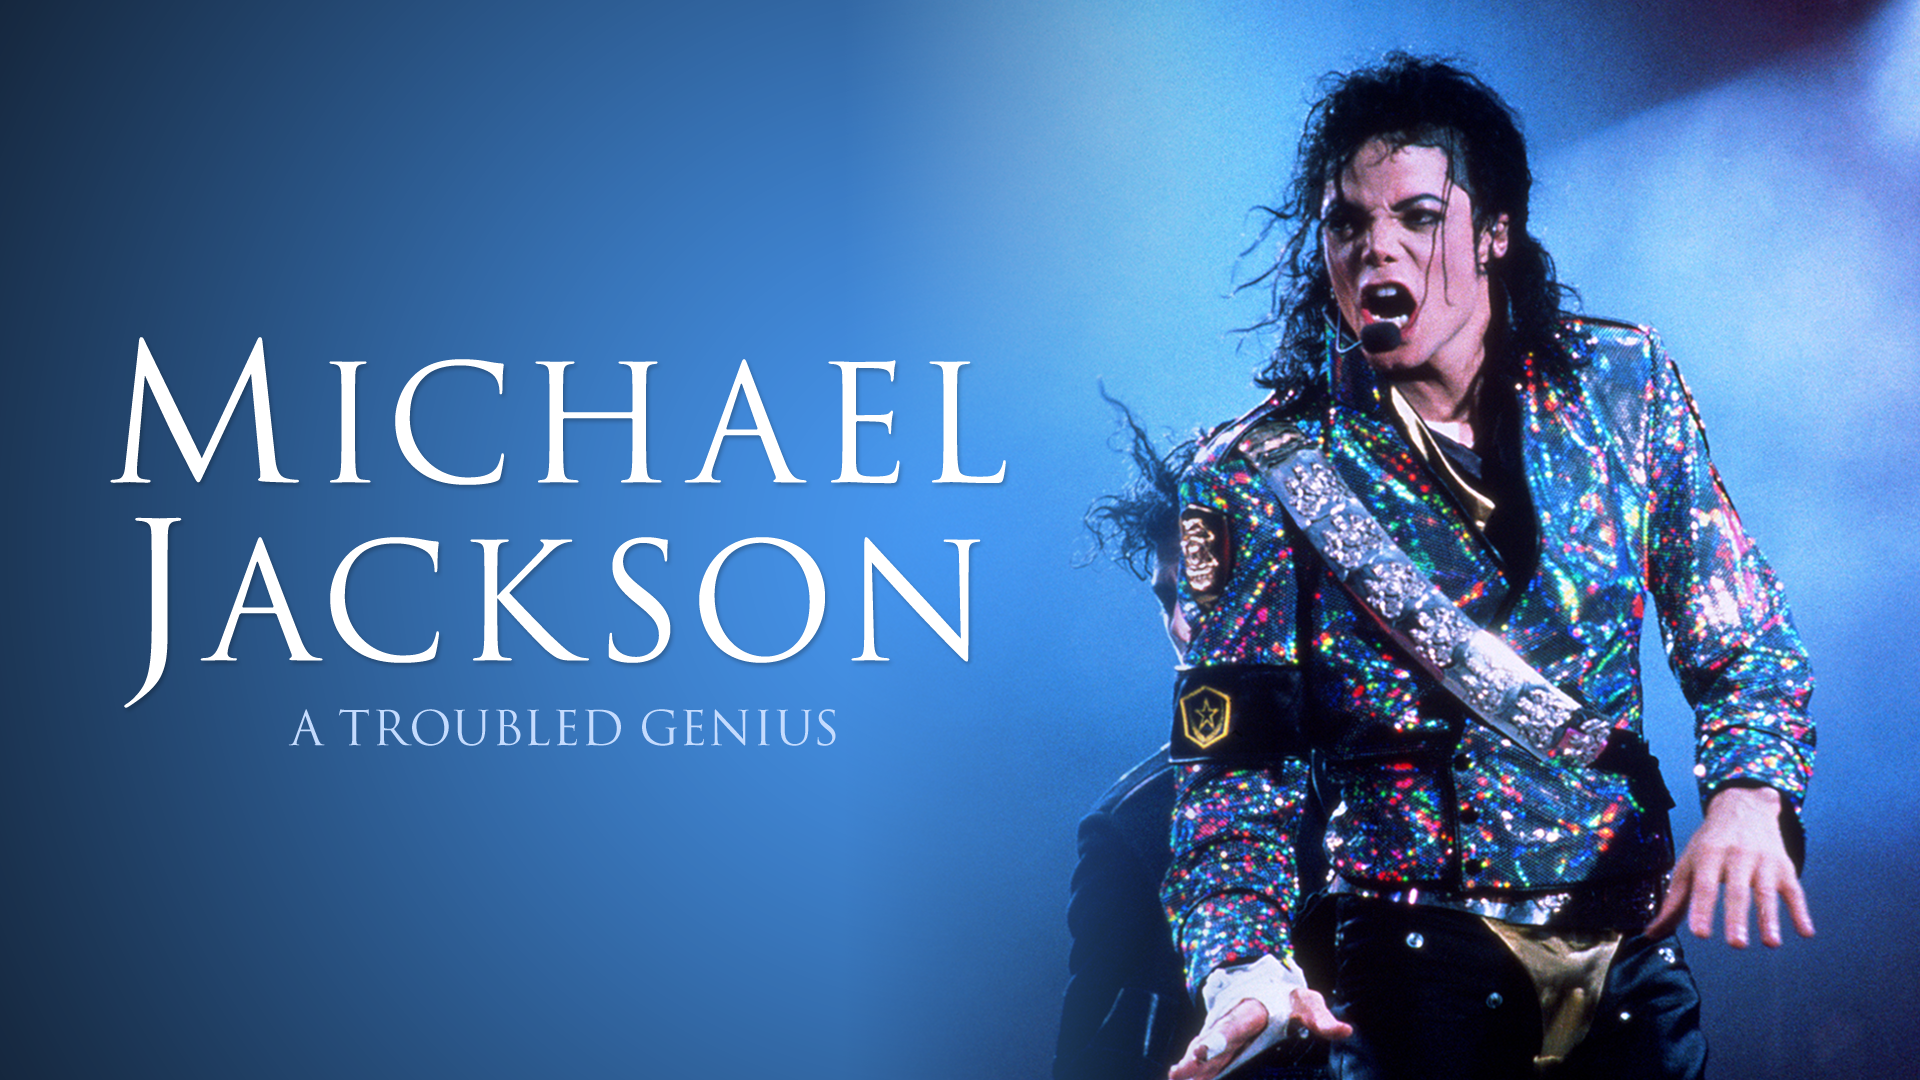 Michael Jackson Photo Hd - HD Wallpaper 